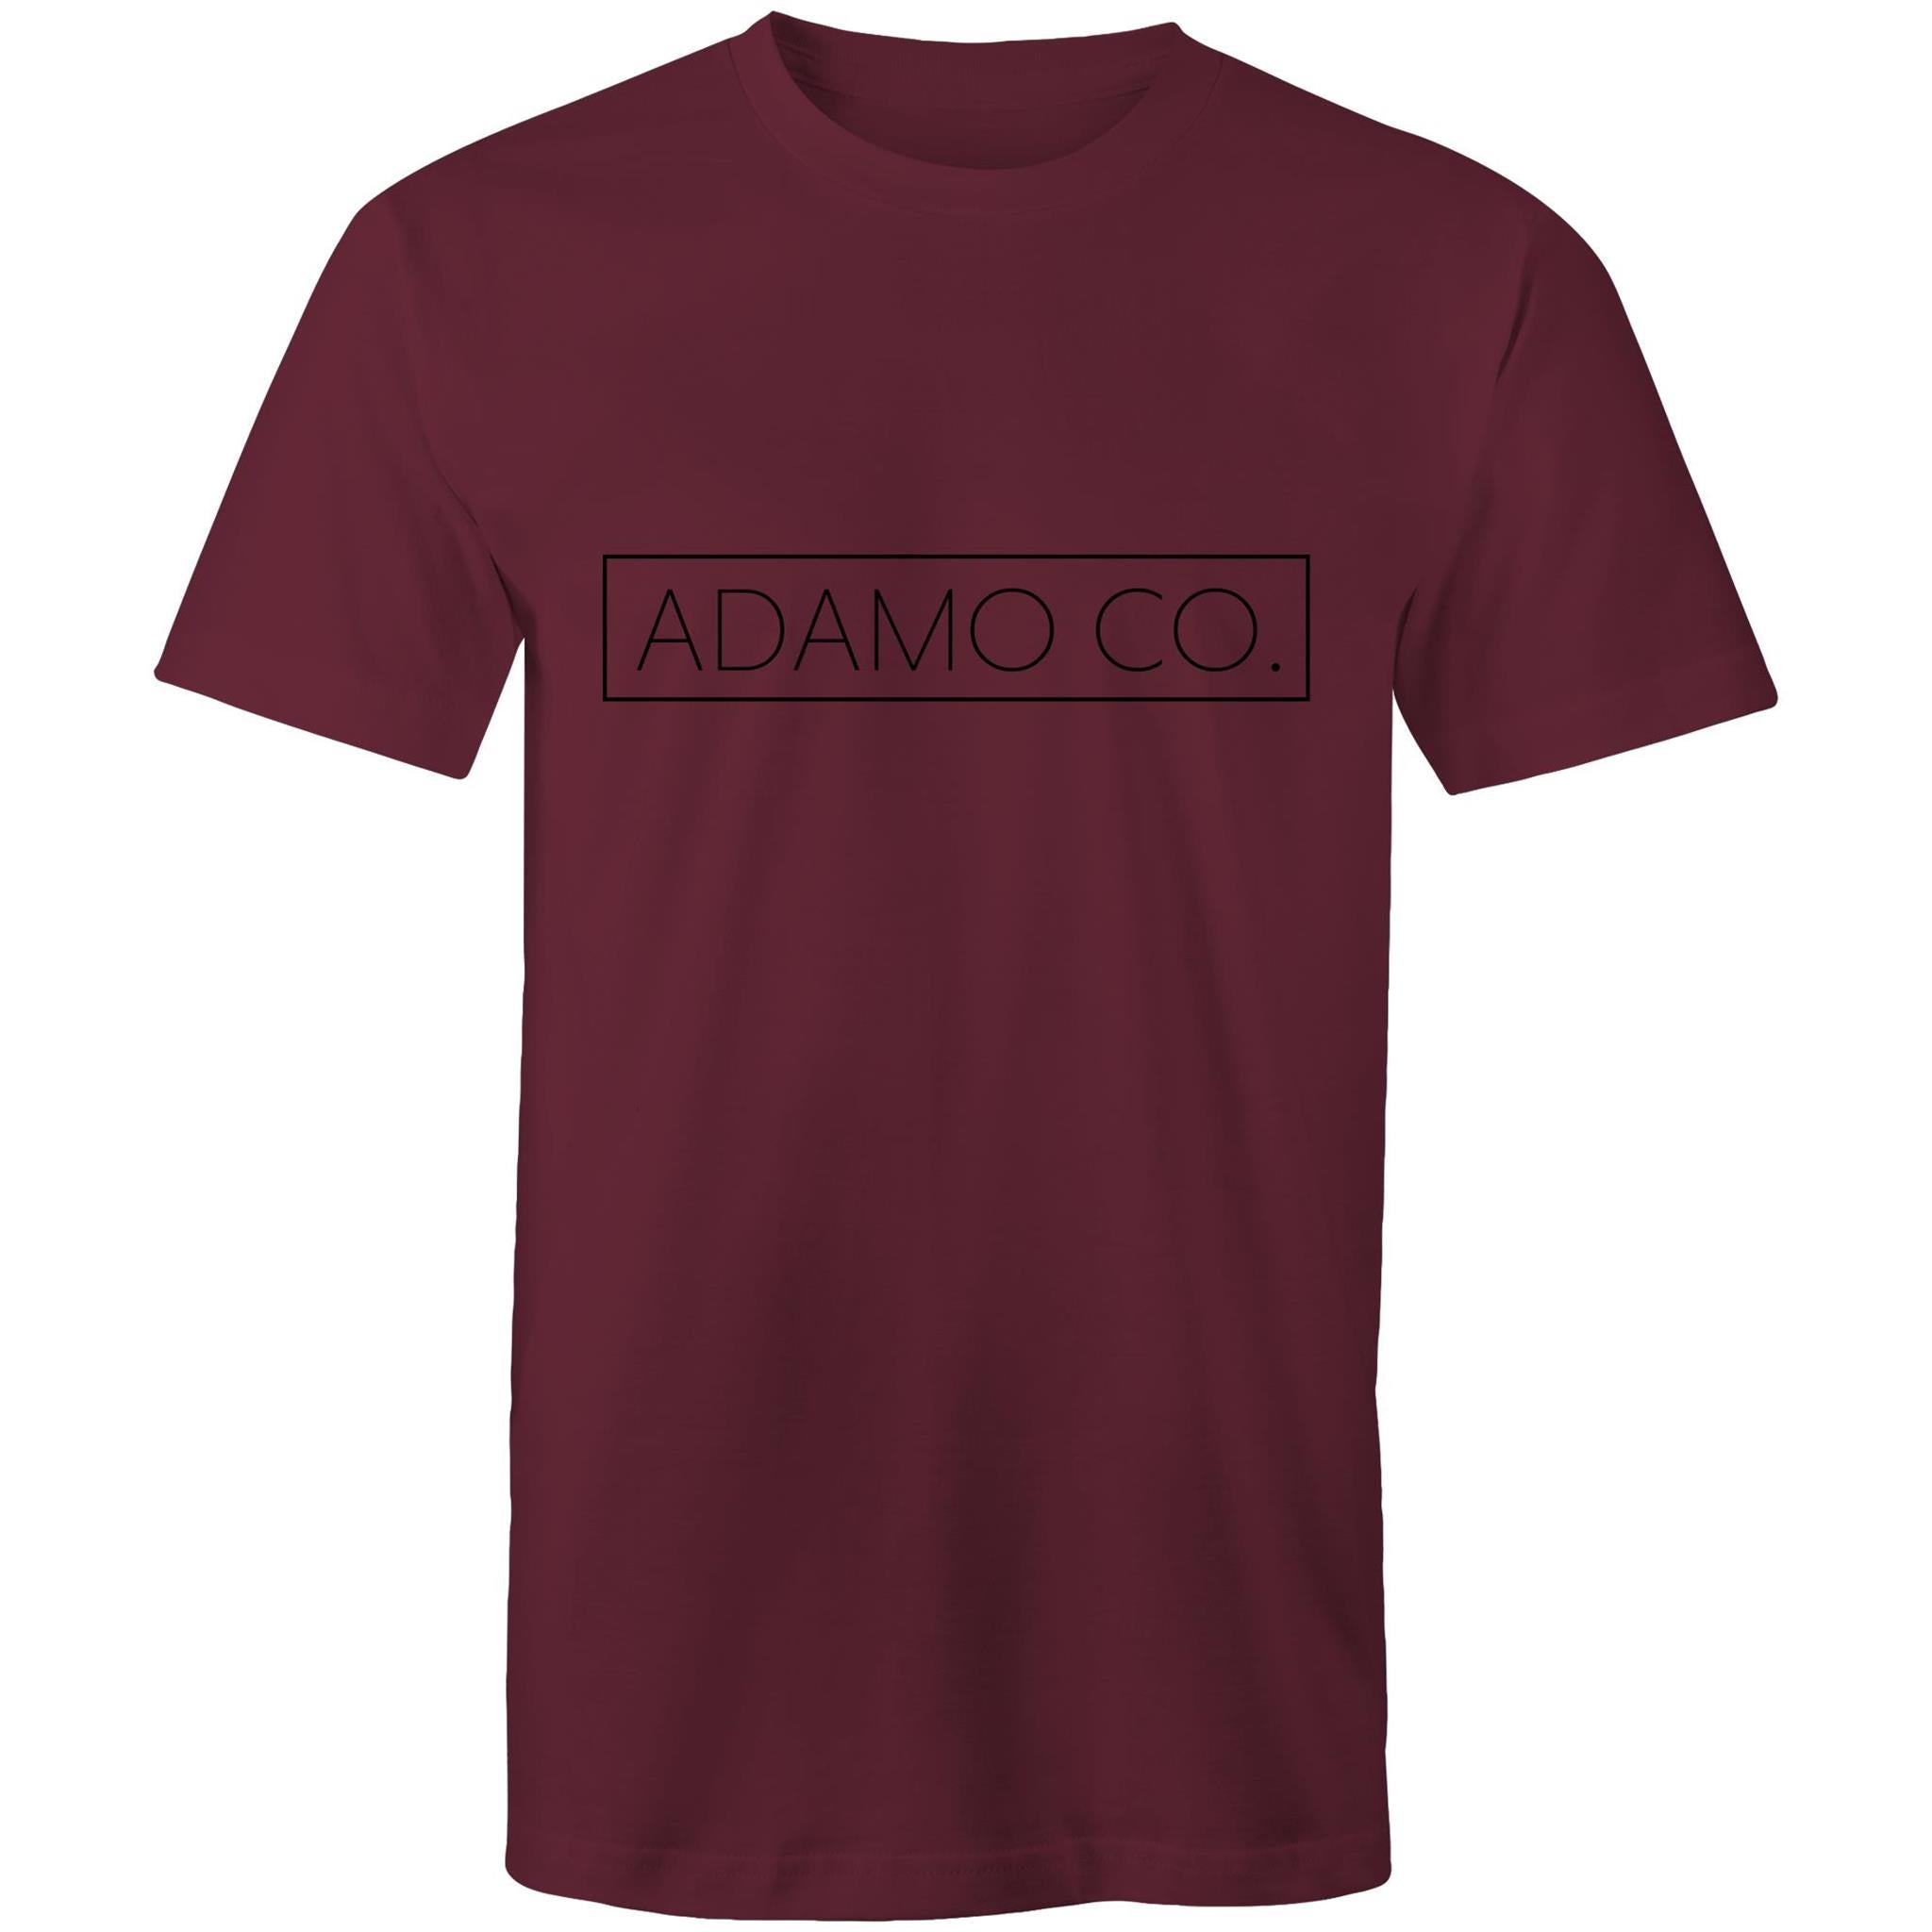 ADAMO CO. Men's Coloured Staple Tee - ADAMO CO.